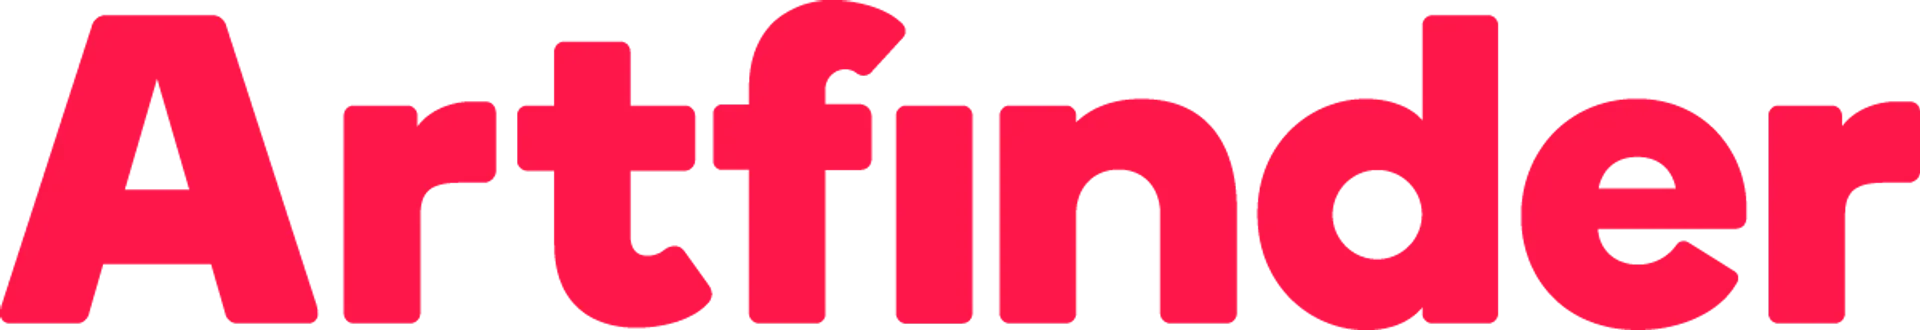 ARTFINDER logo. Current catalogue